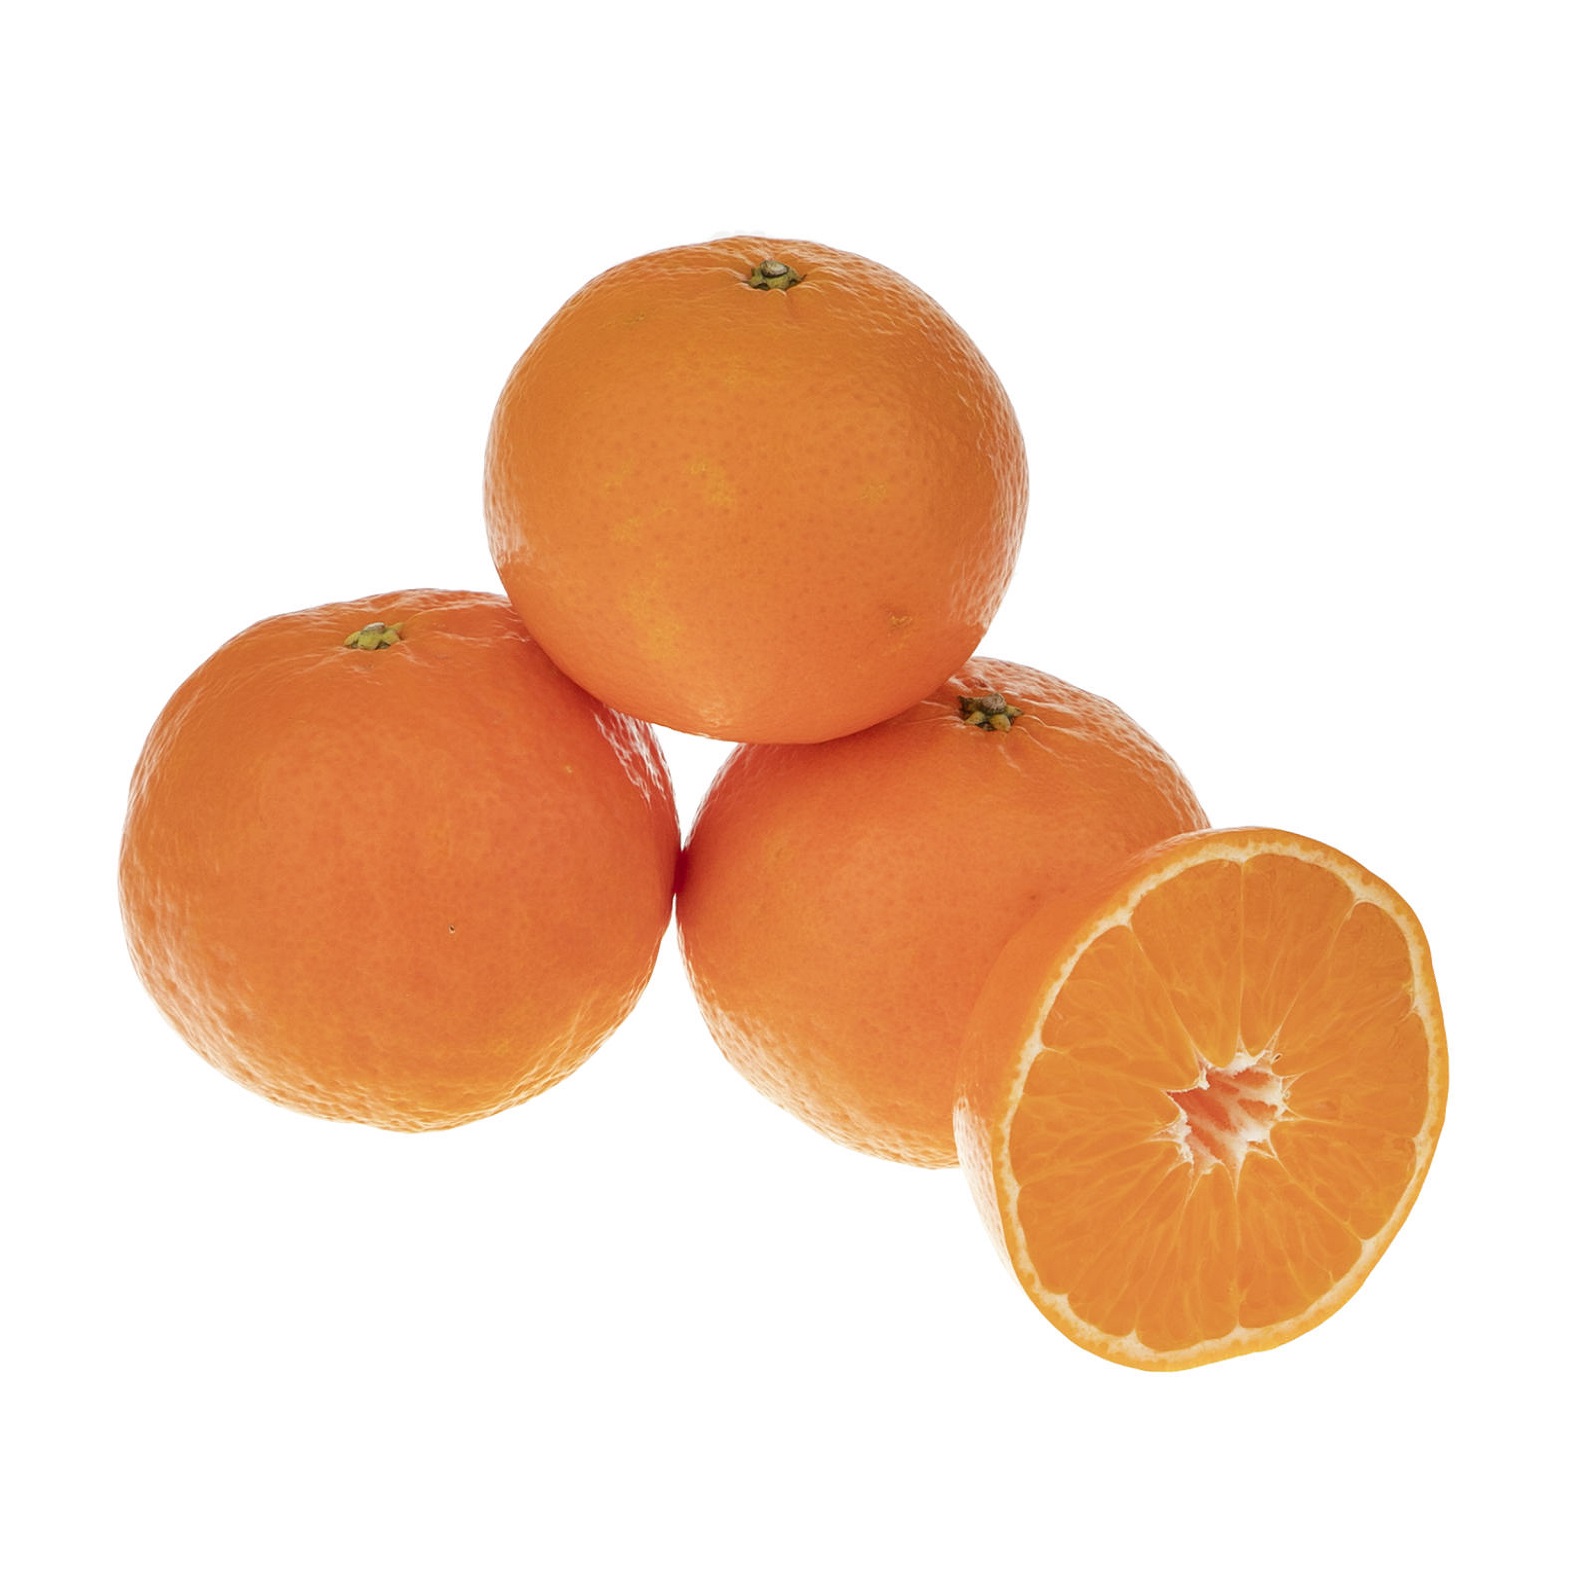 نارنگی پچ درجه یک -2 کیلوگرم